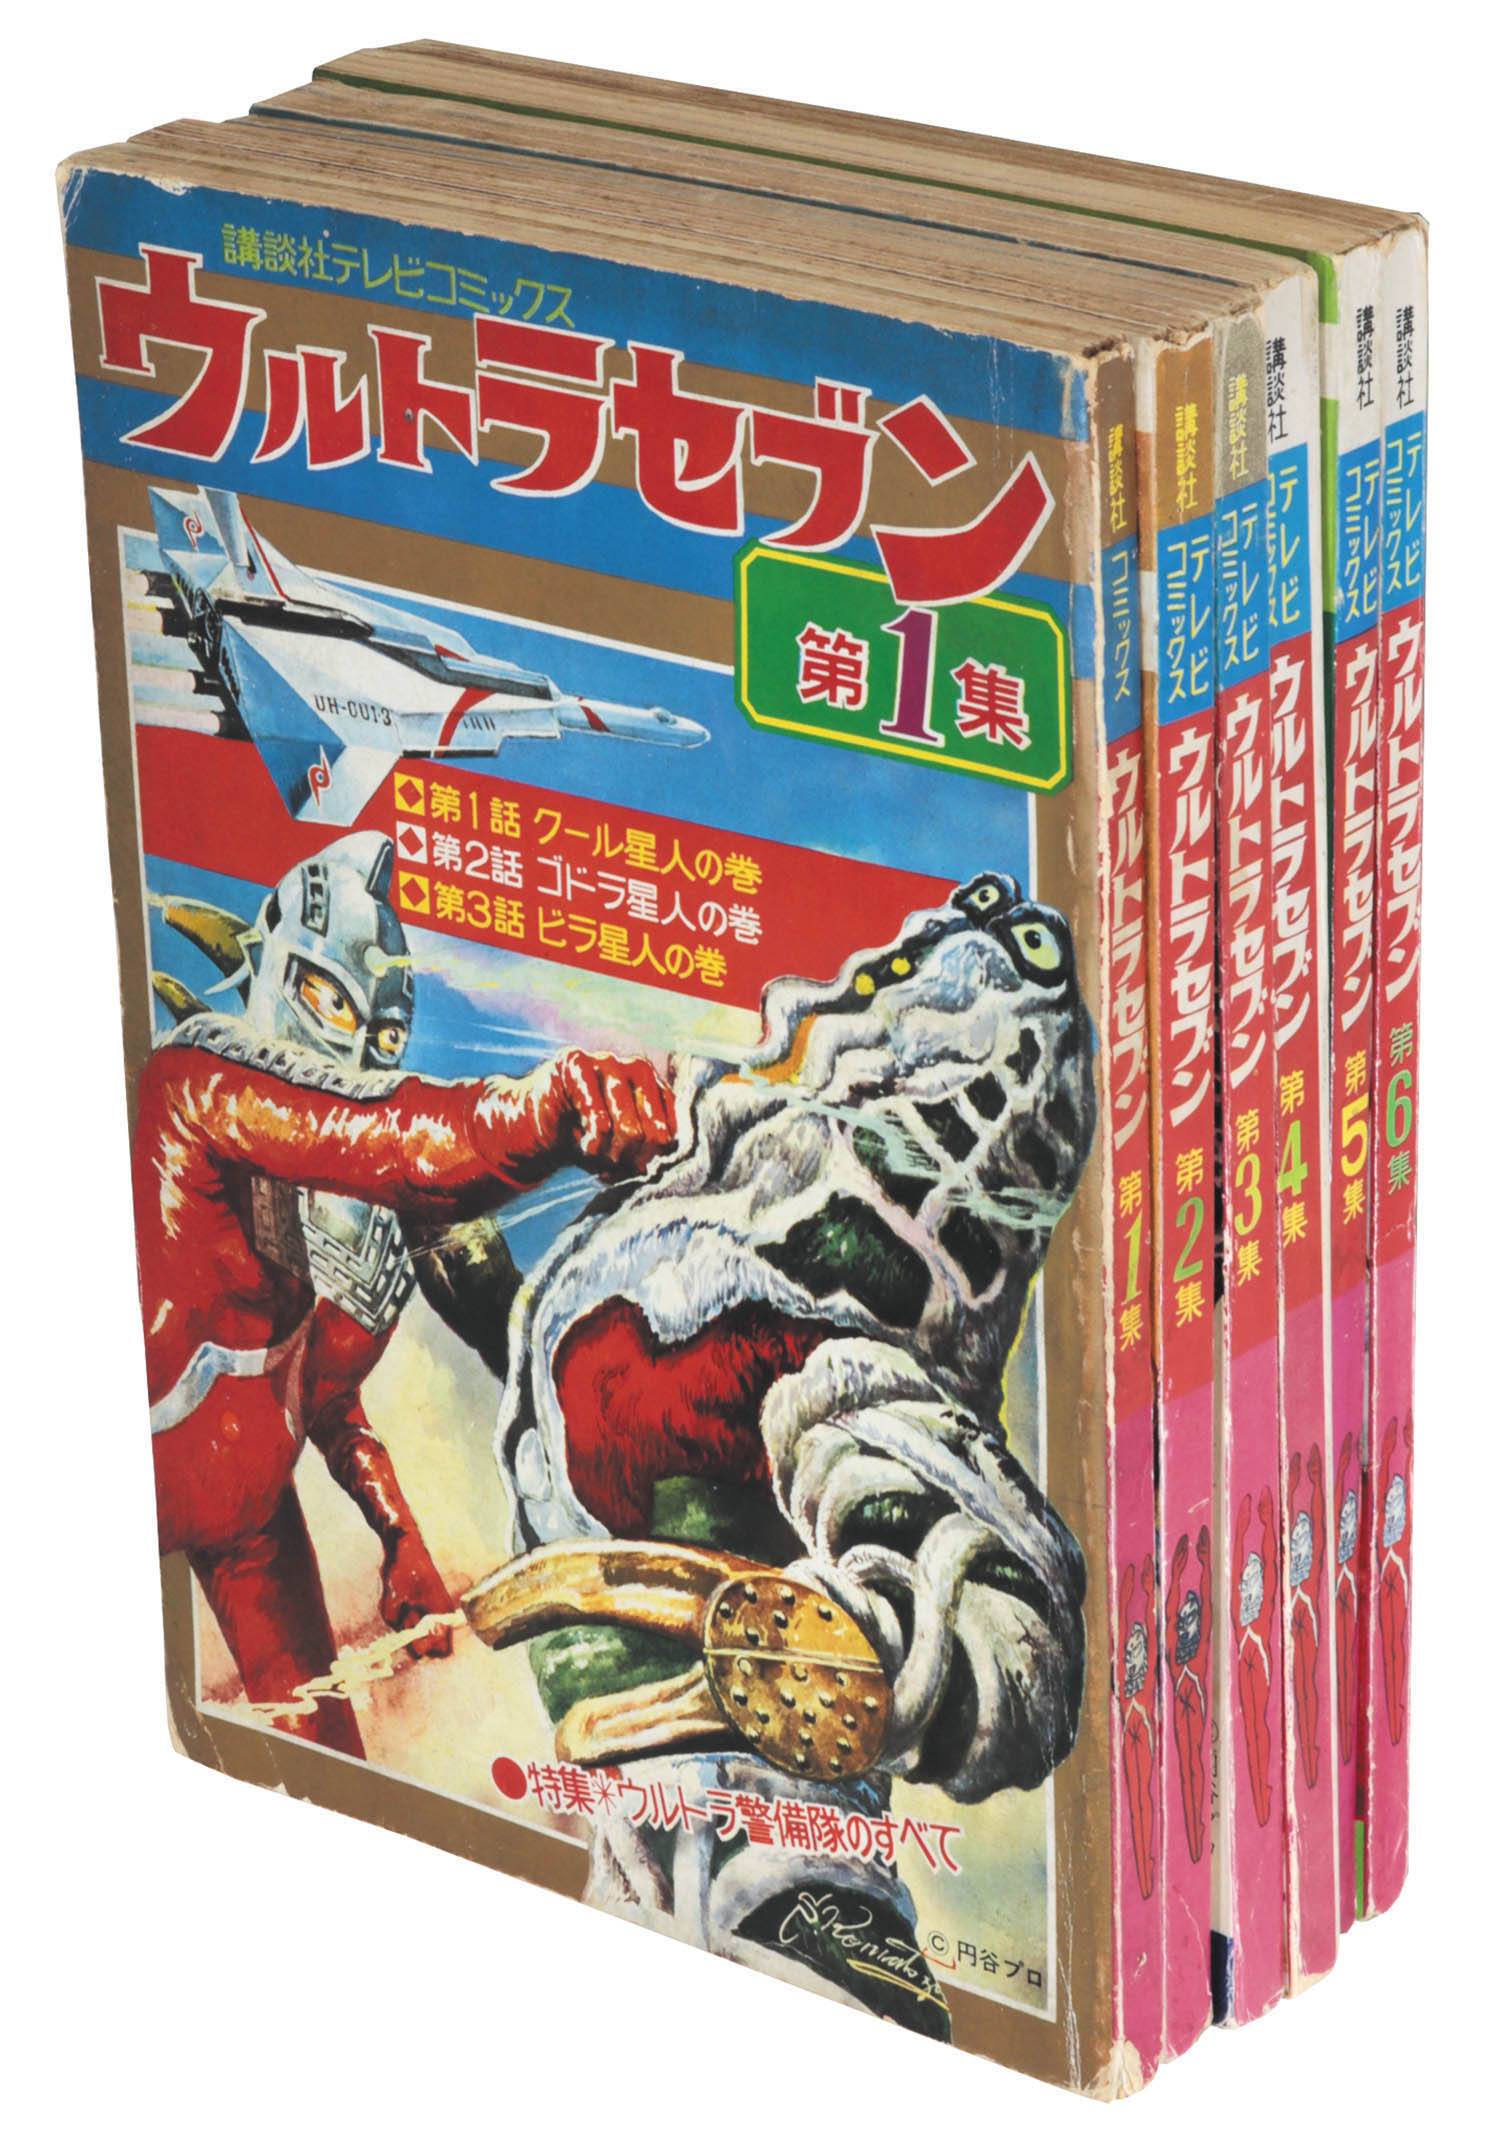 講談社テレビコミックス ウルトラセブン 全6巻セット